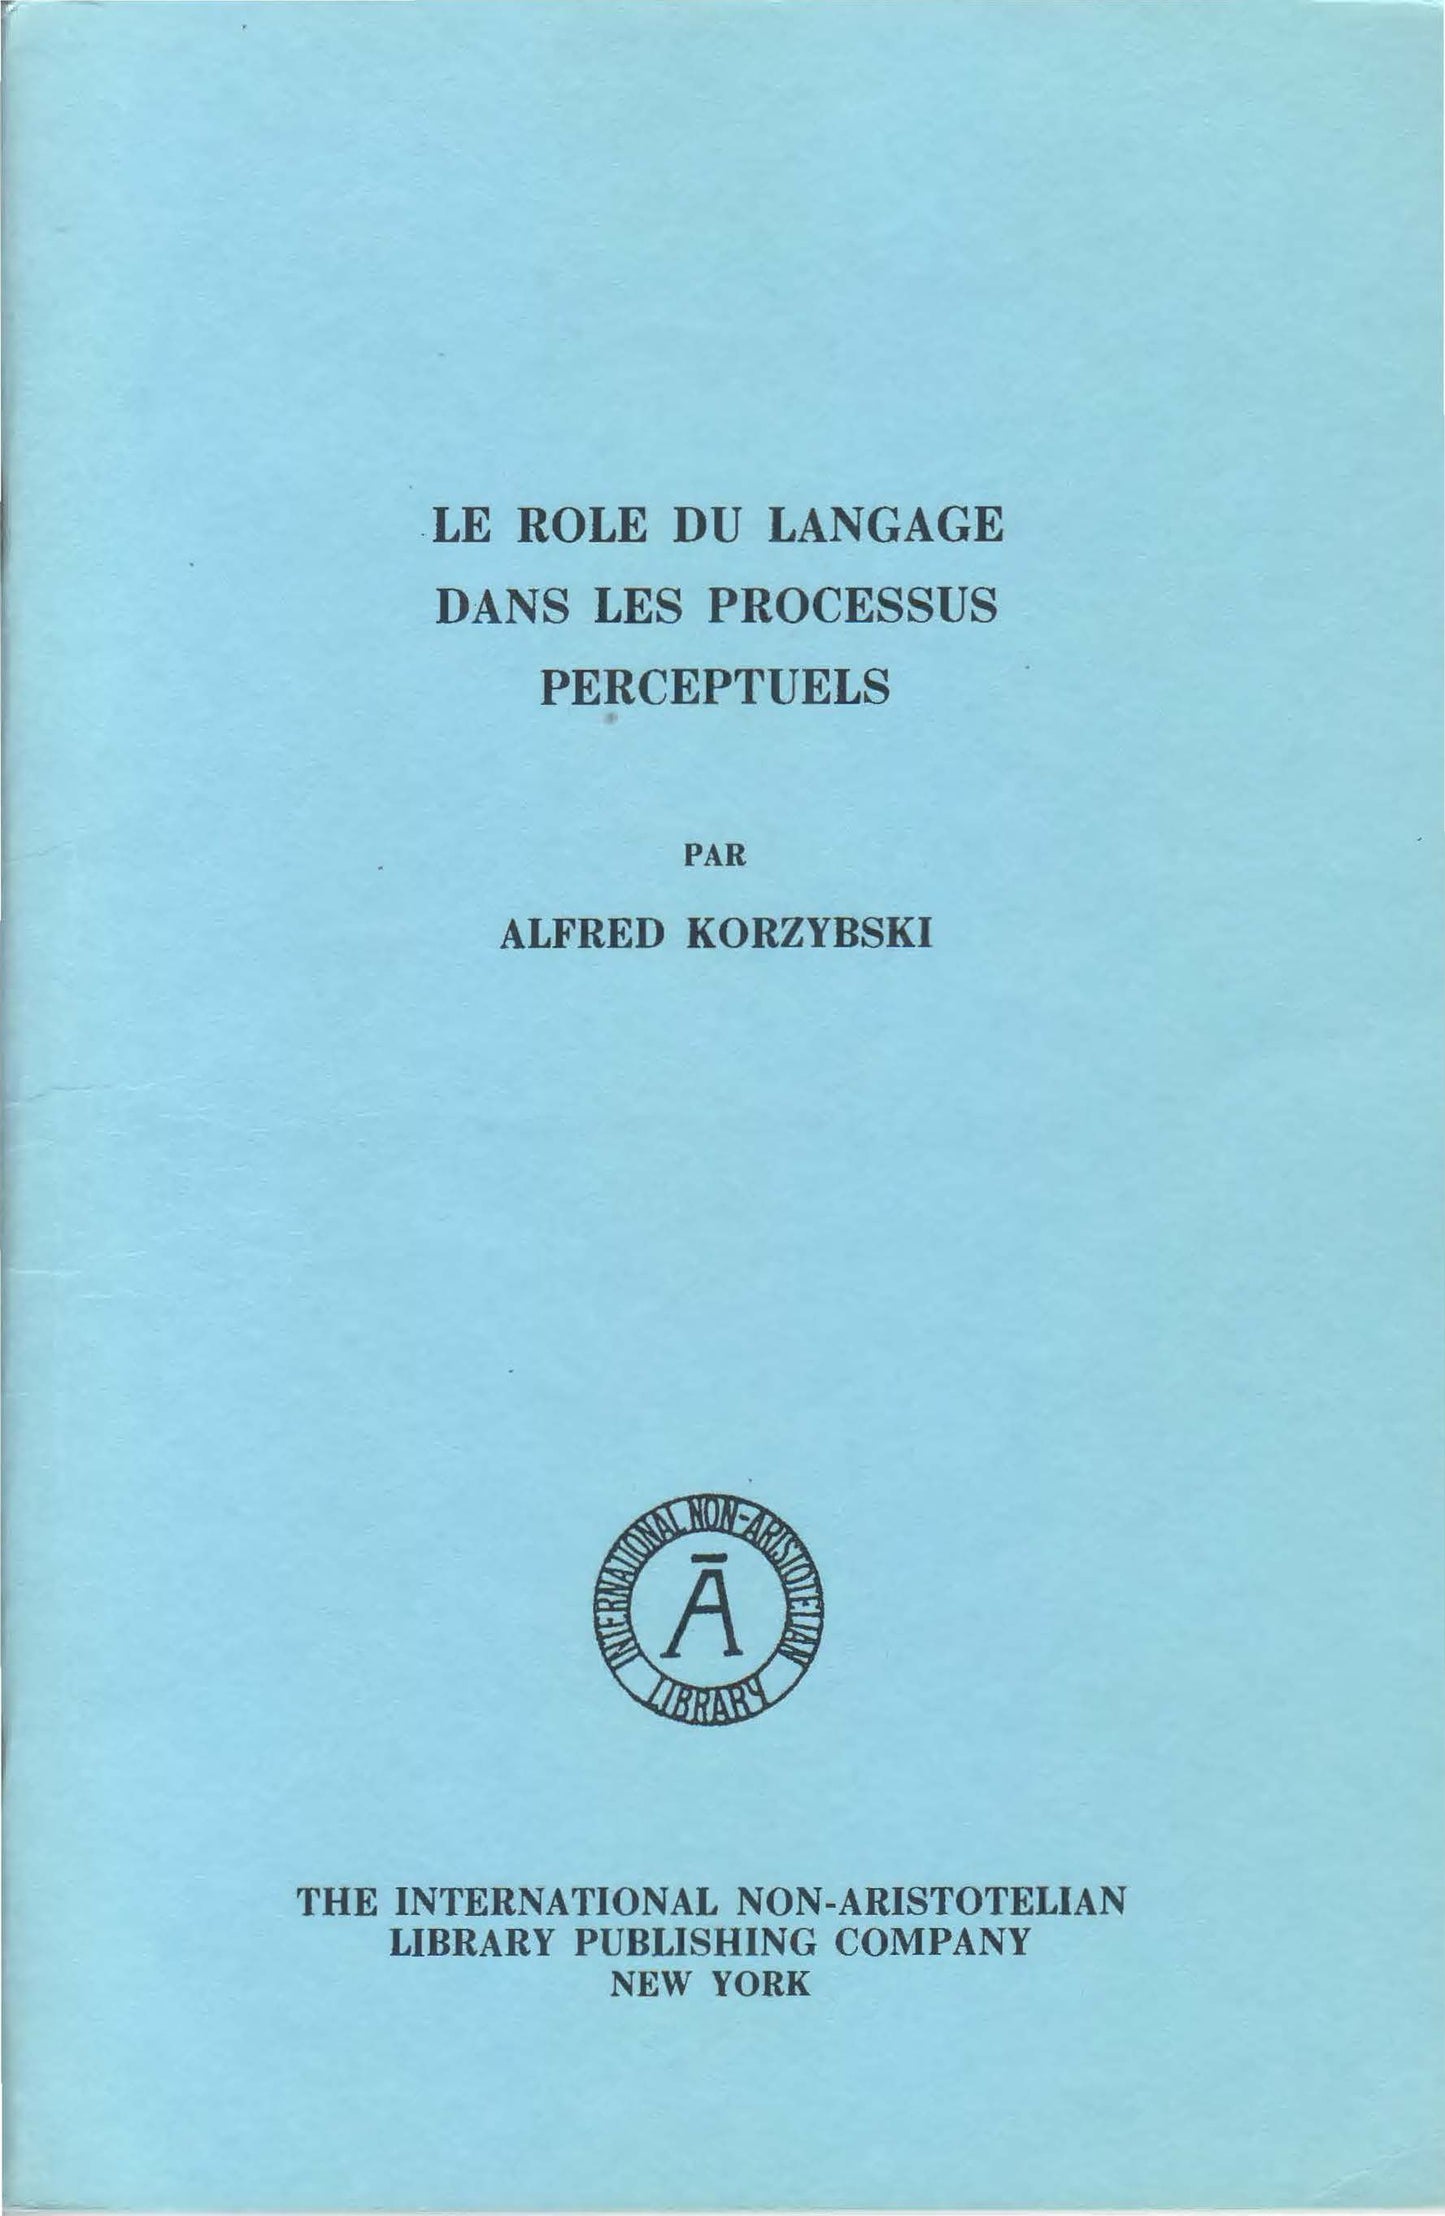 PDF Version (in French): Le Role du Langage dans les Processus Perceptuels